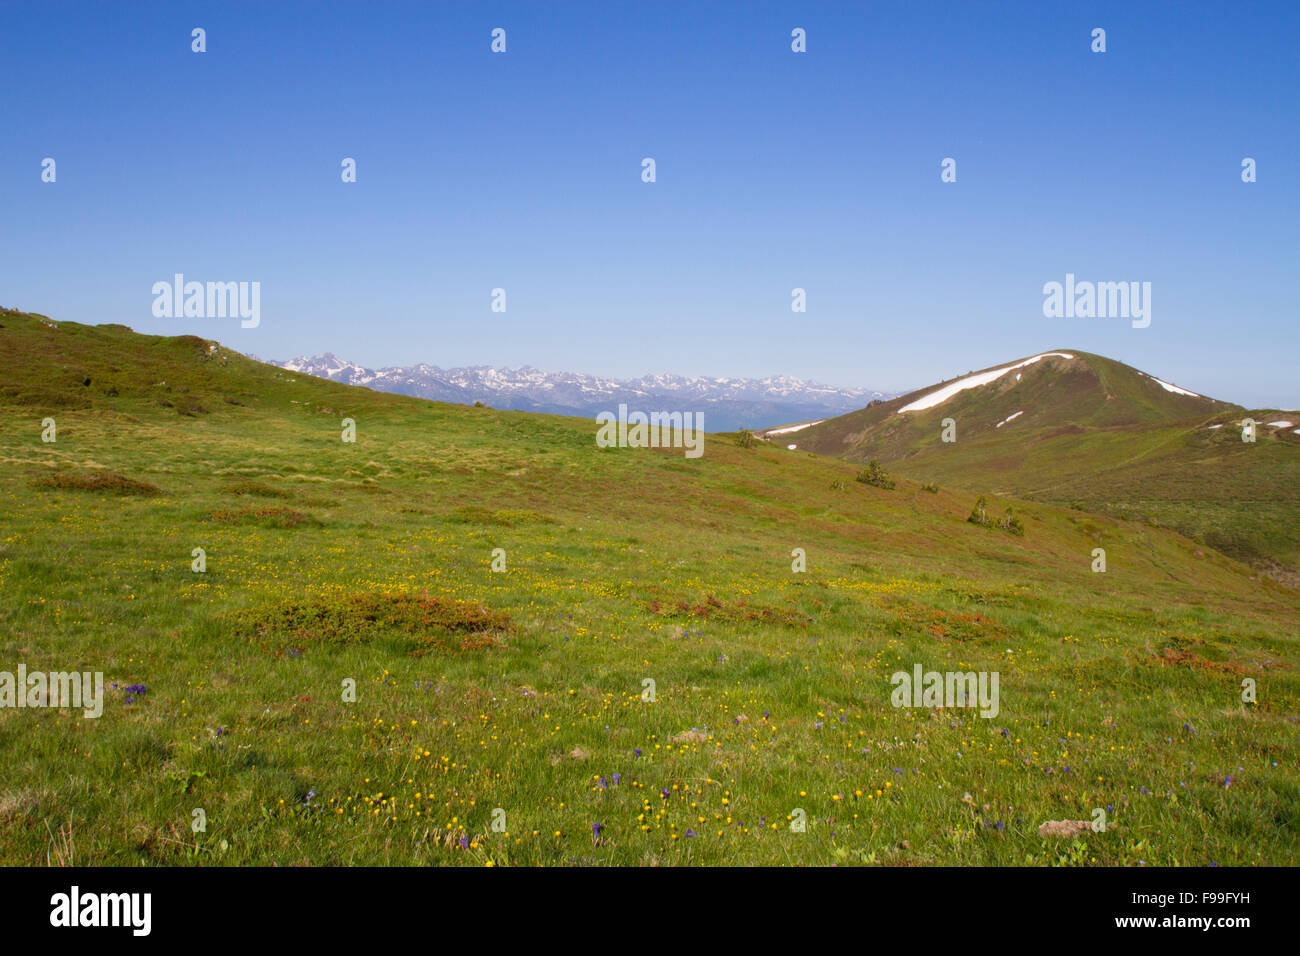 Habitat - Alpine pasture with flowering Gentians (Gentiana sp.). Col de Pailhères, Ariege Pyrenees, France. June. Stock Photo